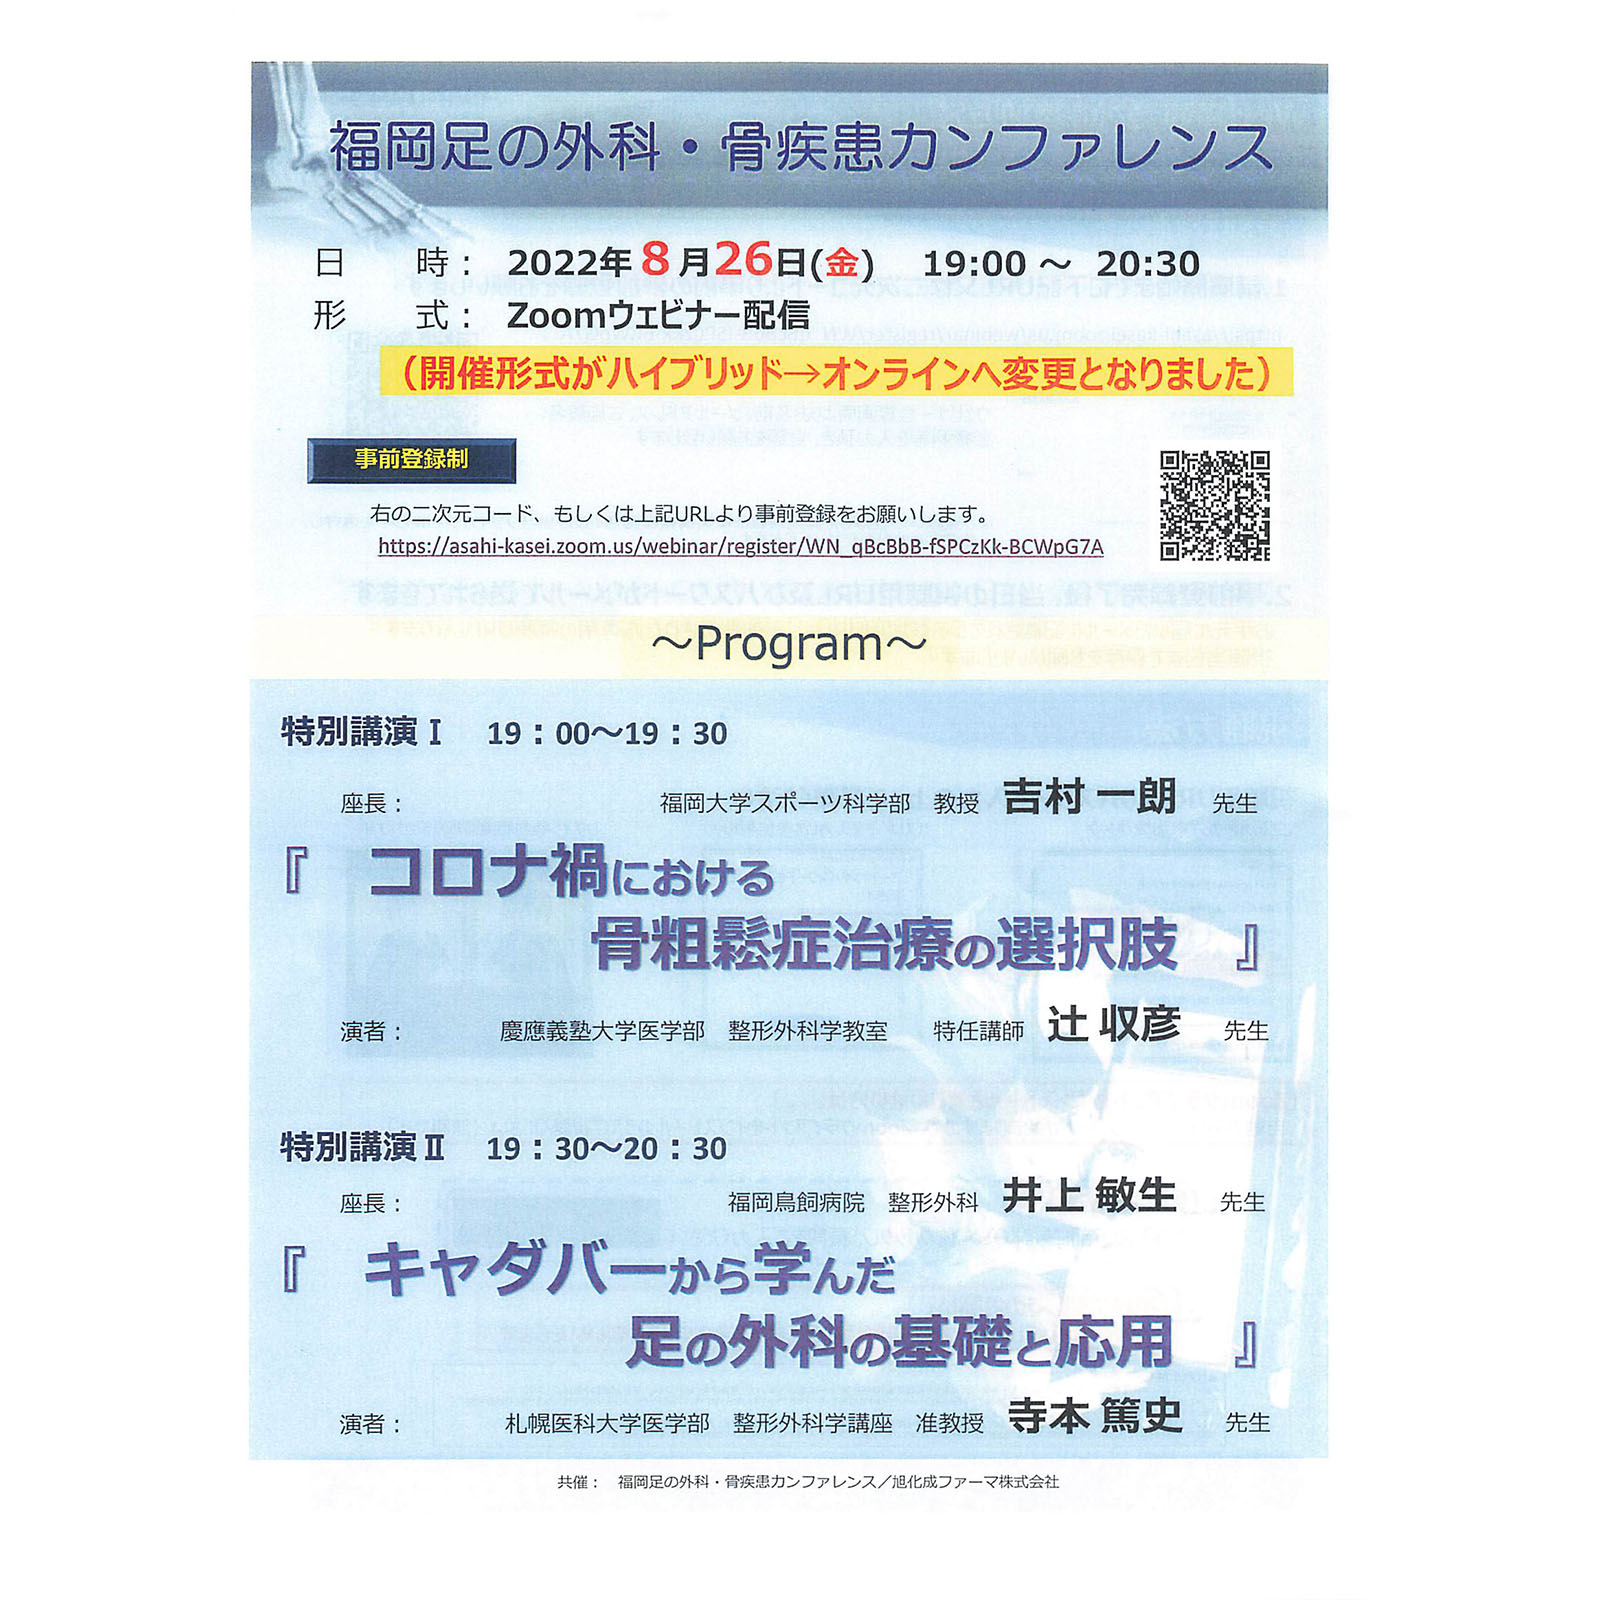 2022.8.26福岡足の外科・骨疾患カンファレンス